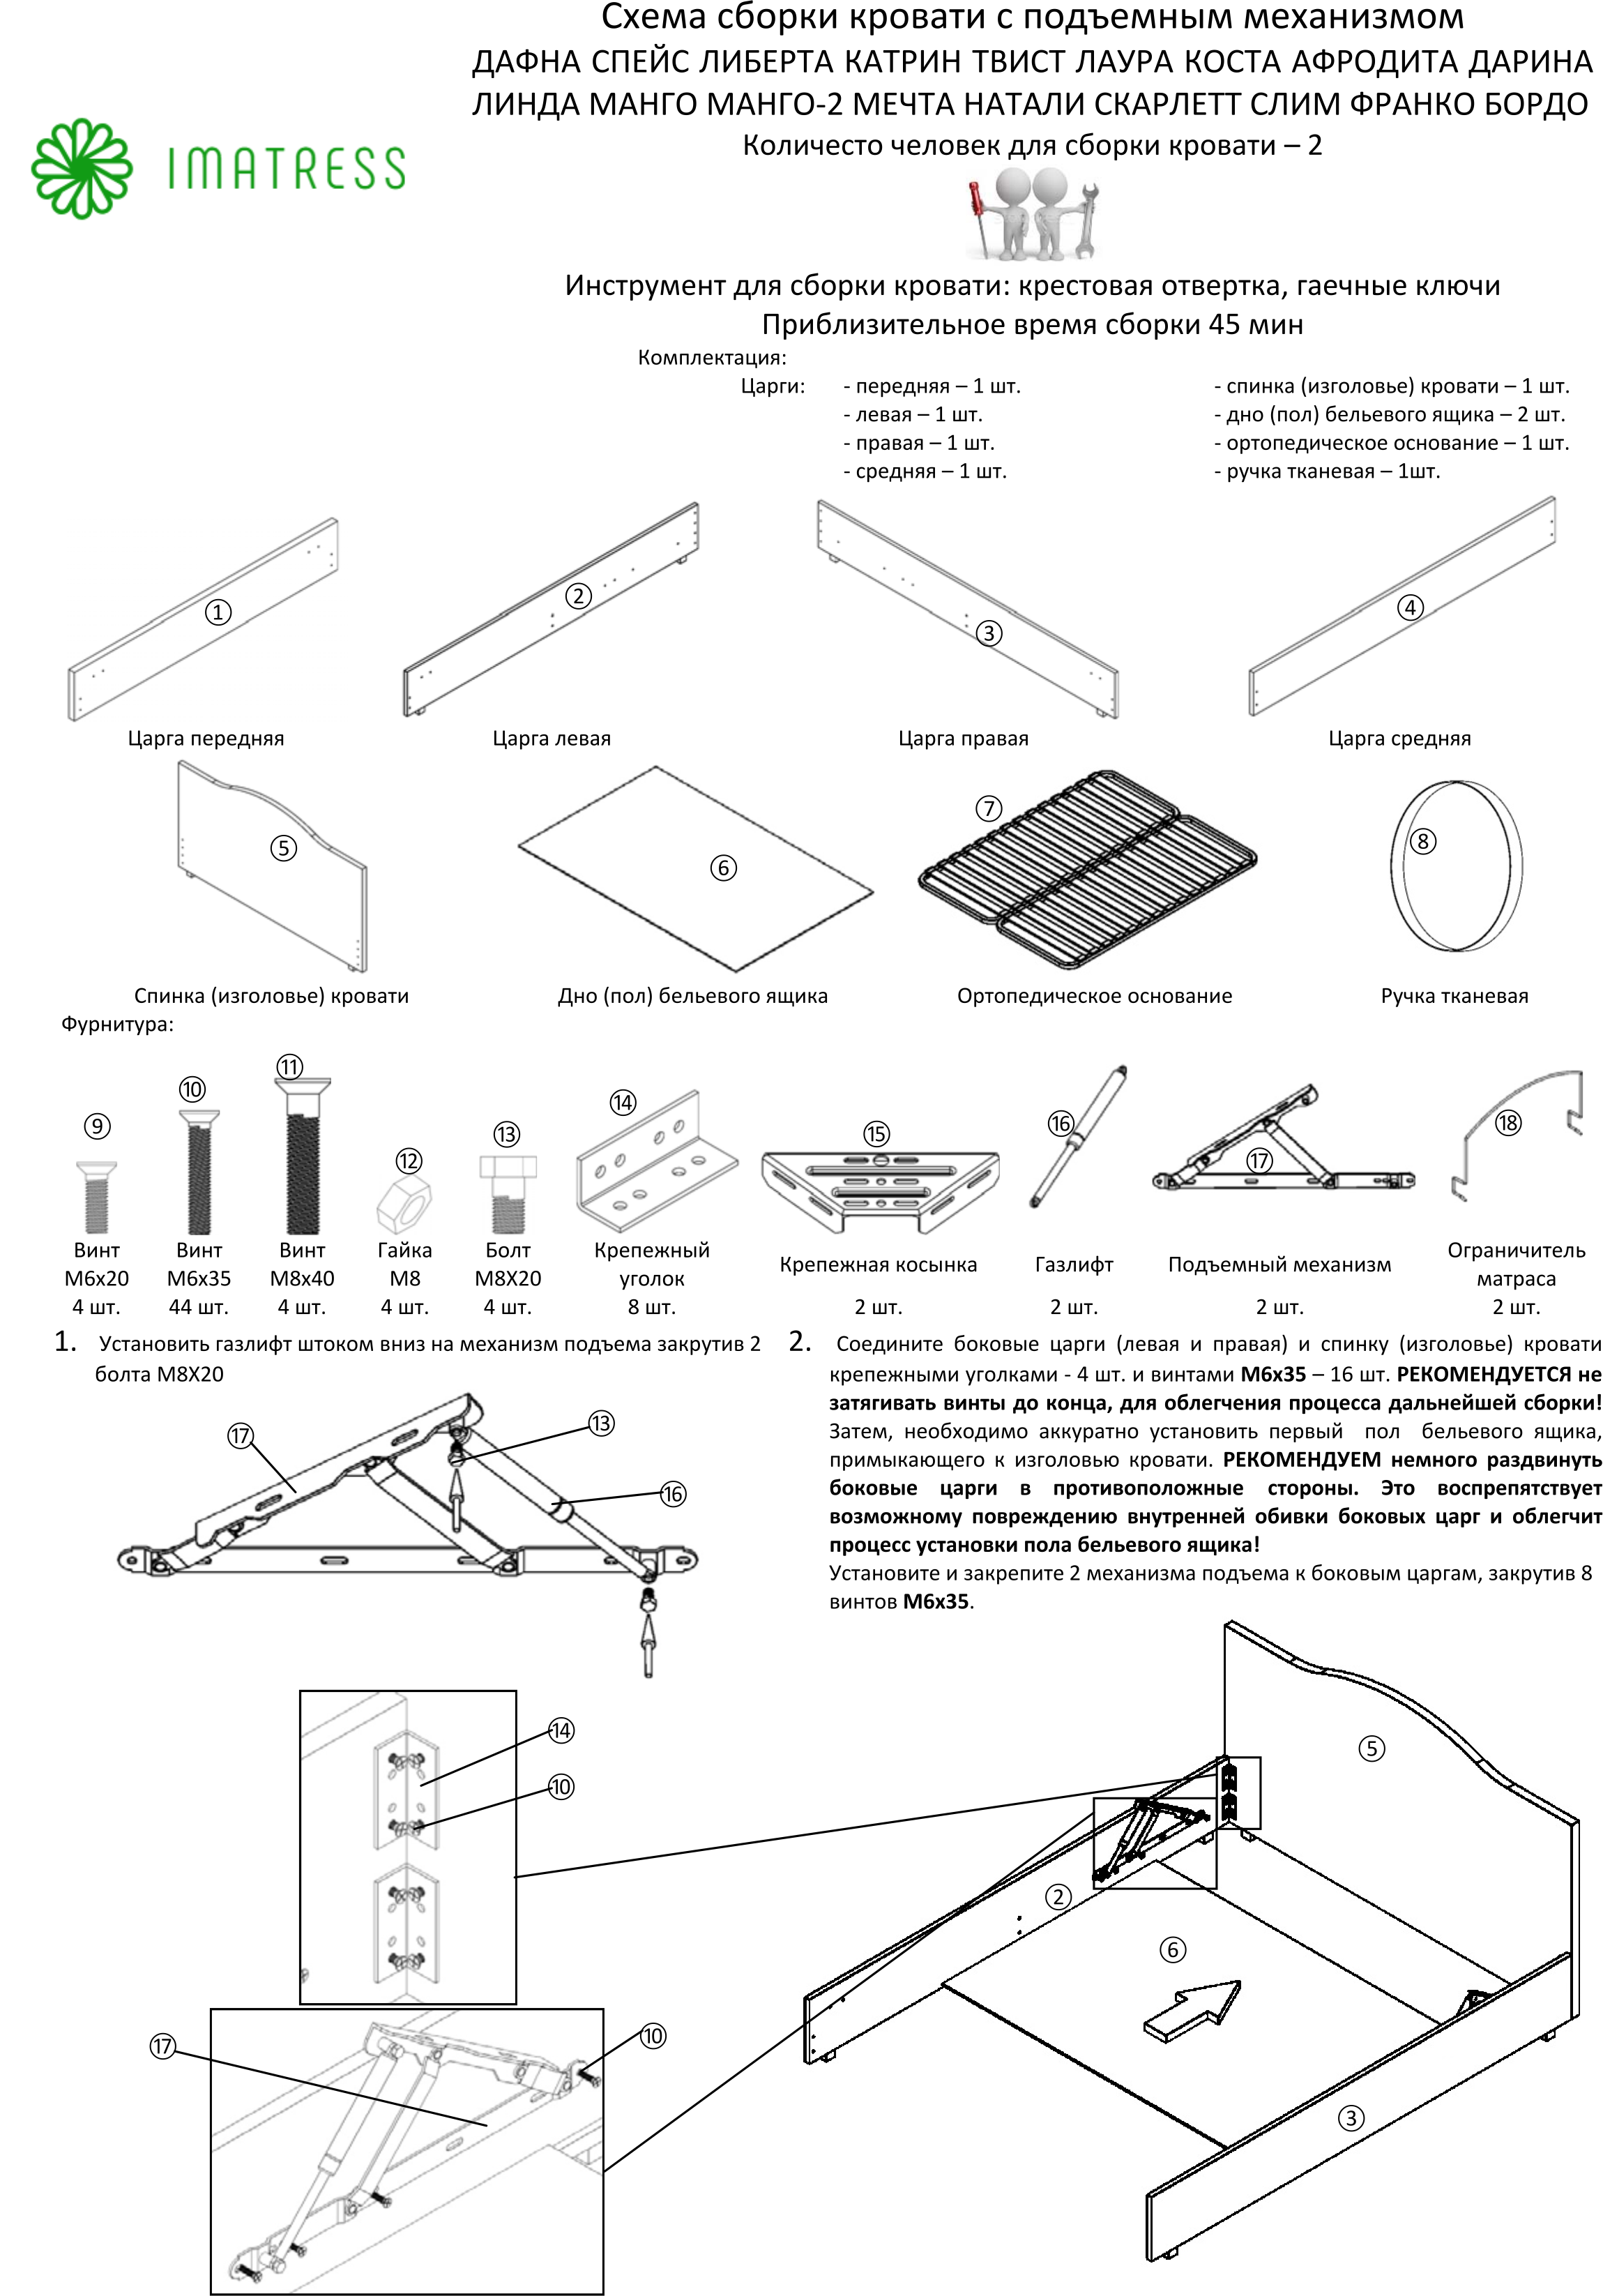 Инструкция по сборке кровати с подъемным механизмом белла